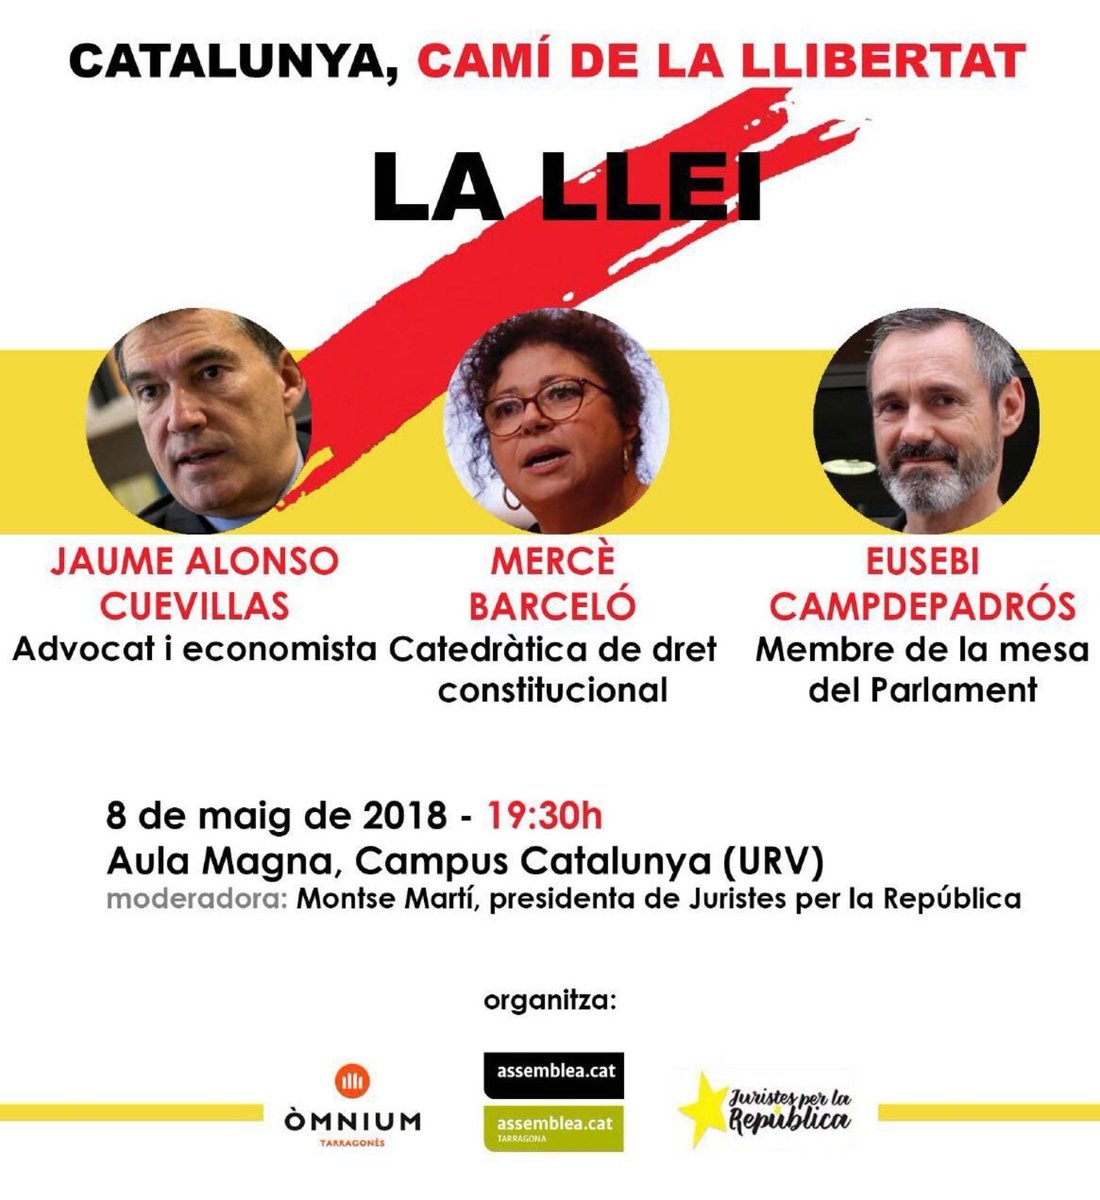 Catalunya, camí de la Llibertat: La llei